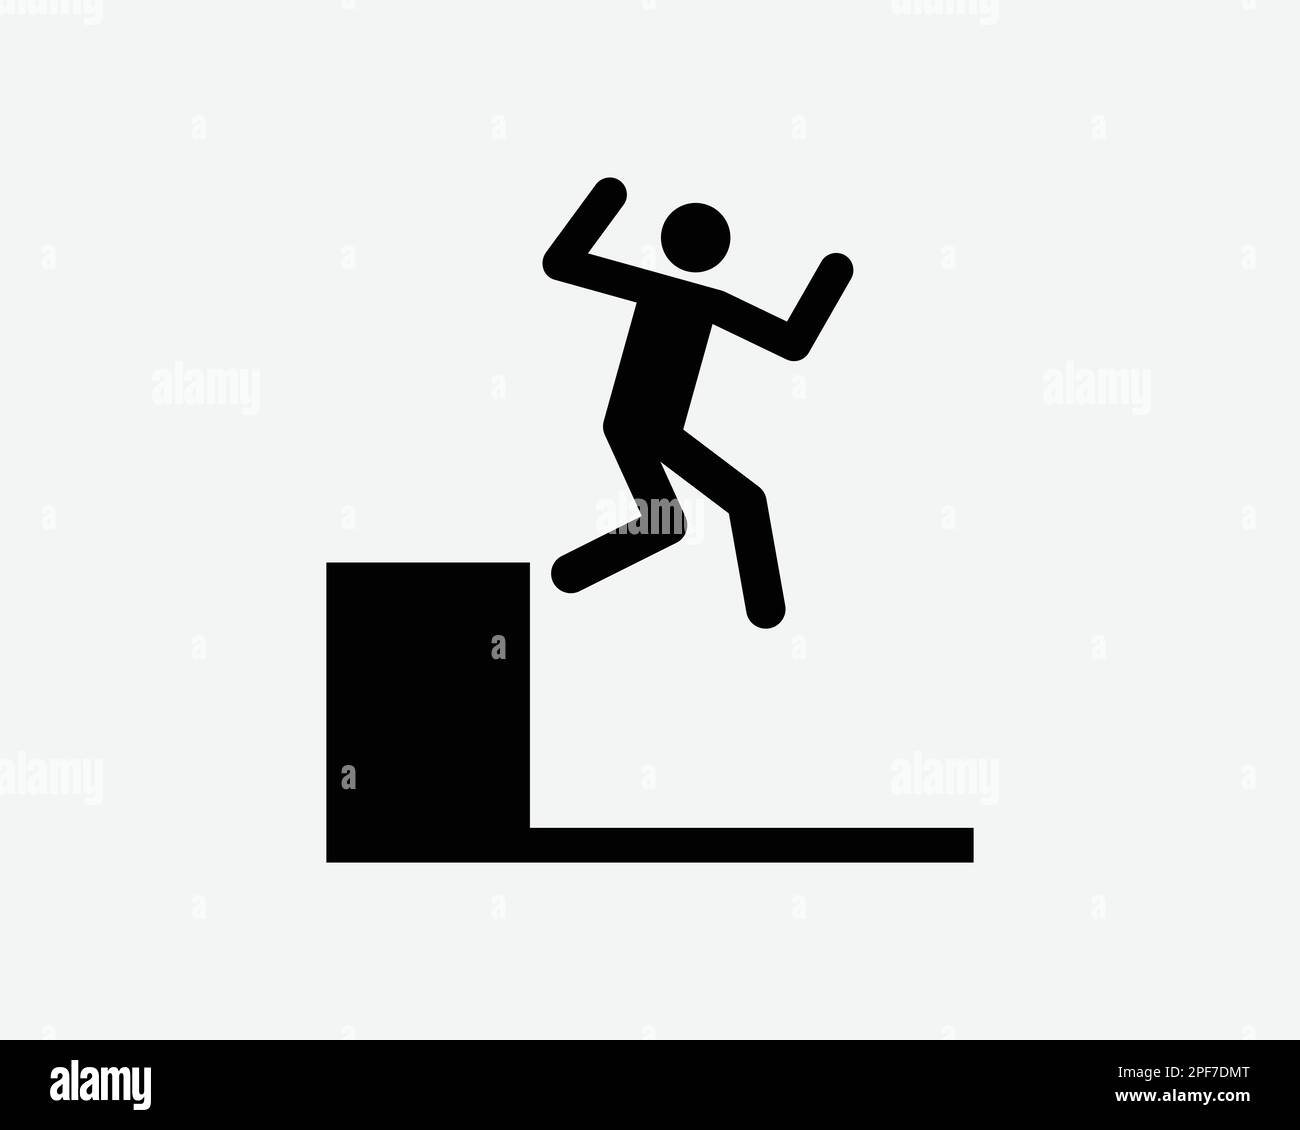 Jumping Down icona uomo Jump Leap Fall Cliff High Ground Suicide Vector Black White Silhouette simbolo segno grafico clipart Illustrazione Pictogra Illustrazione Vettoriale